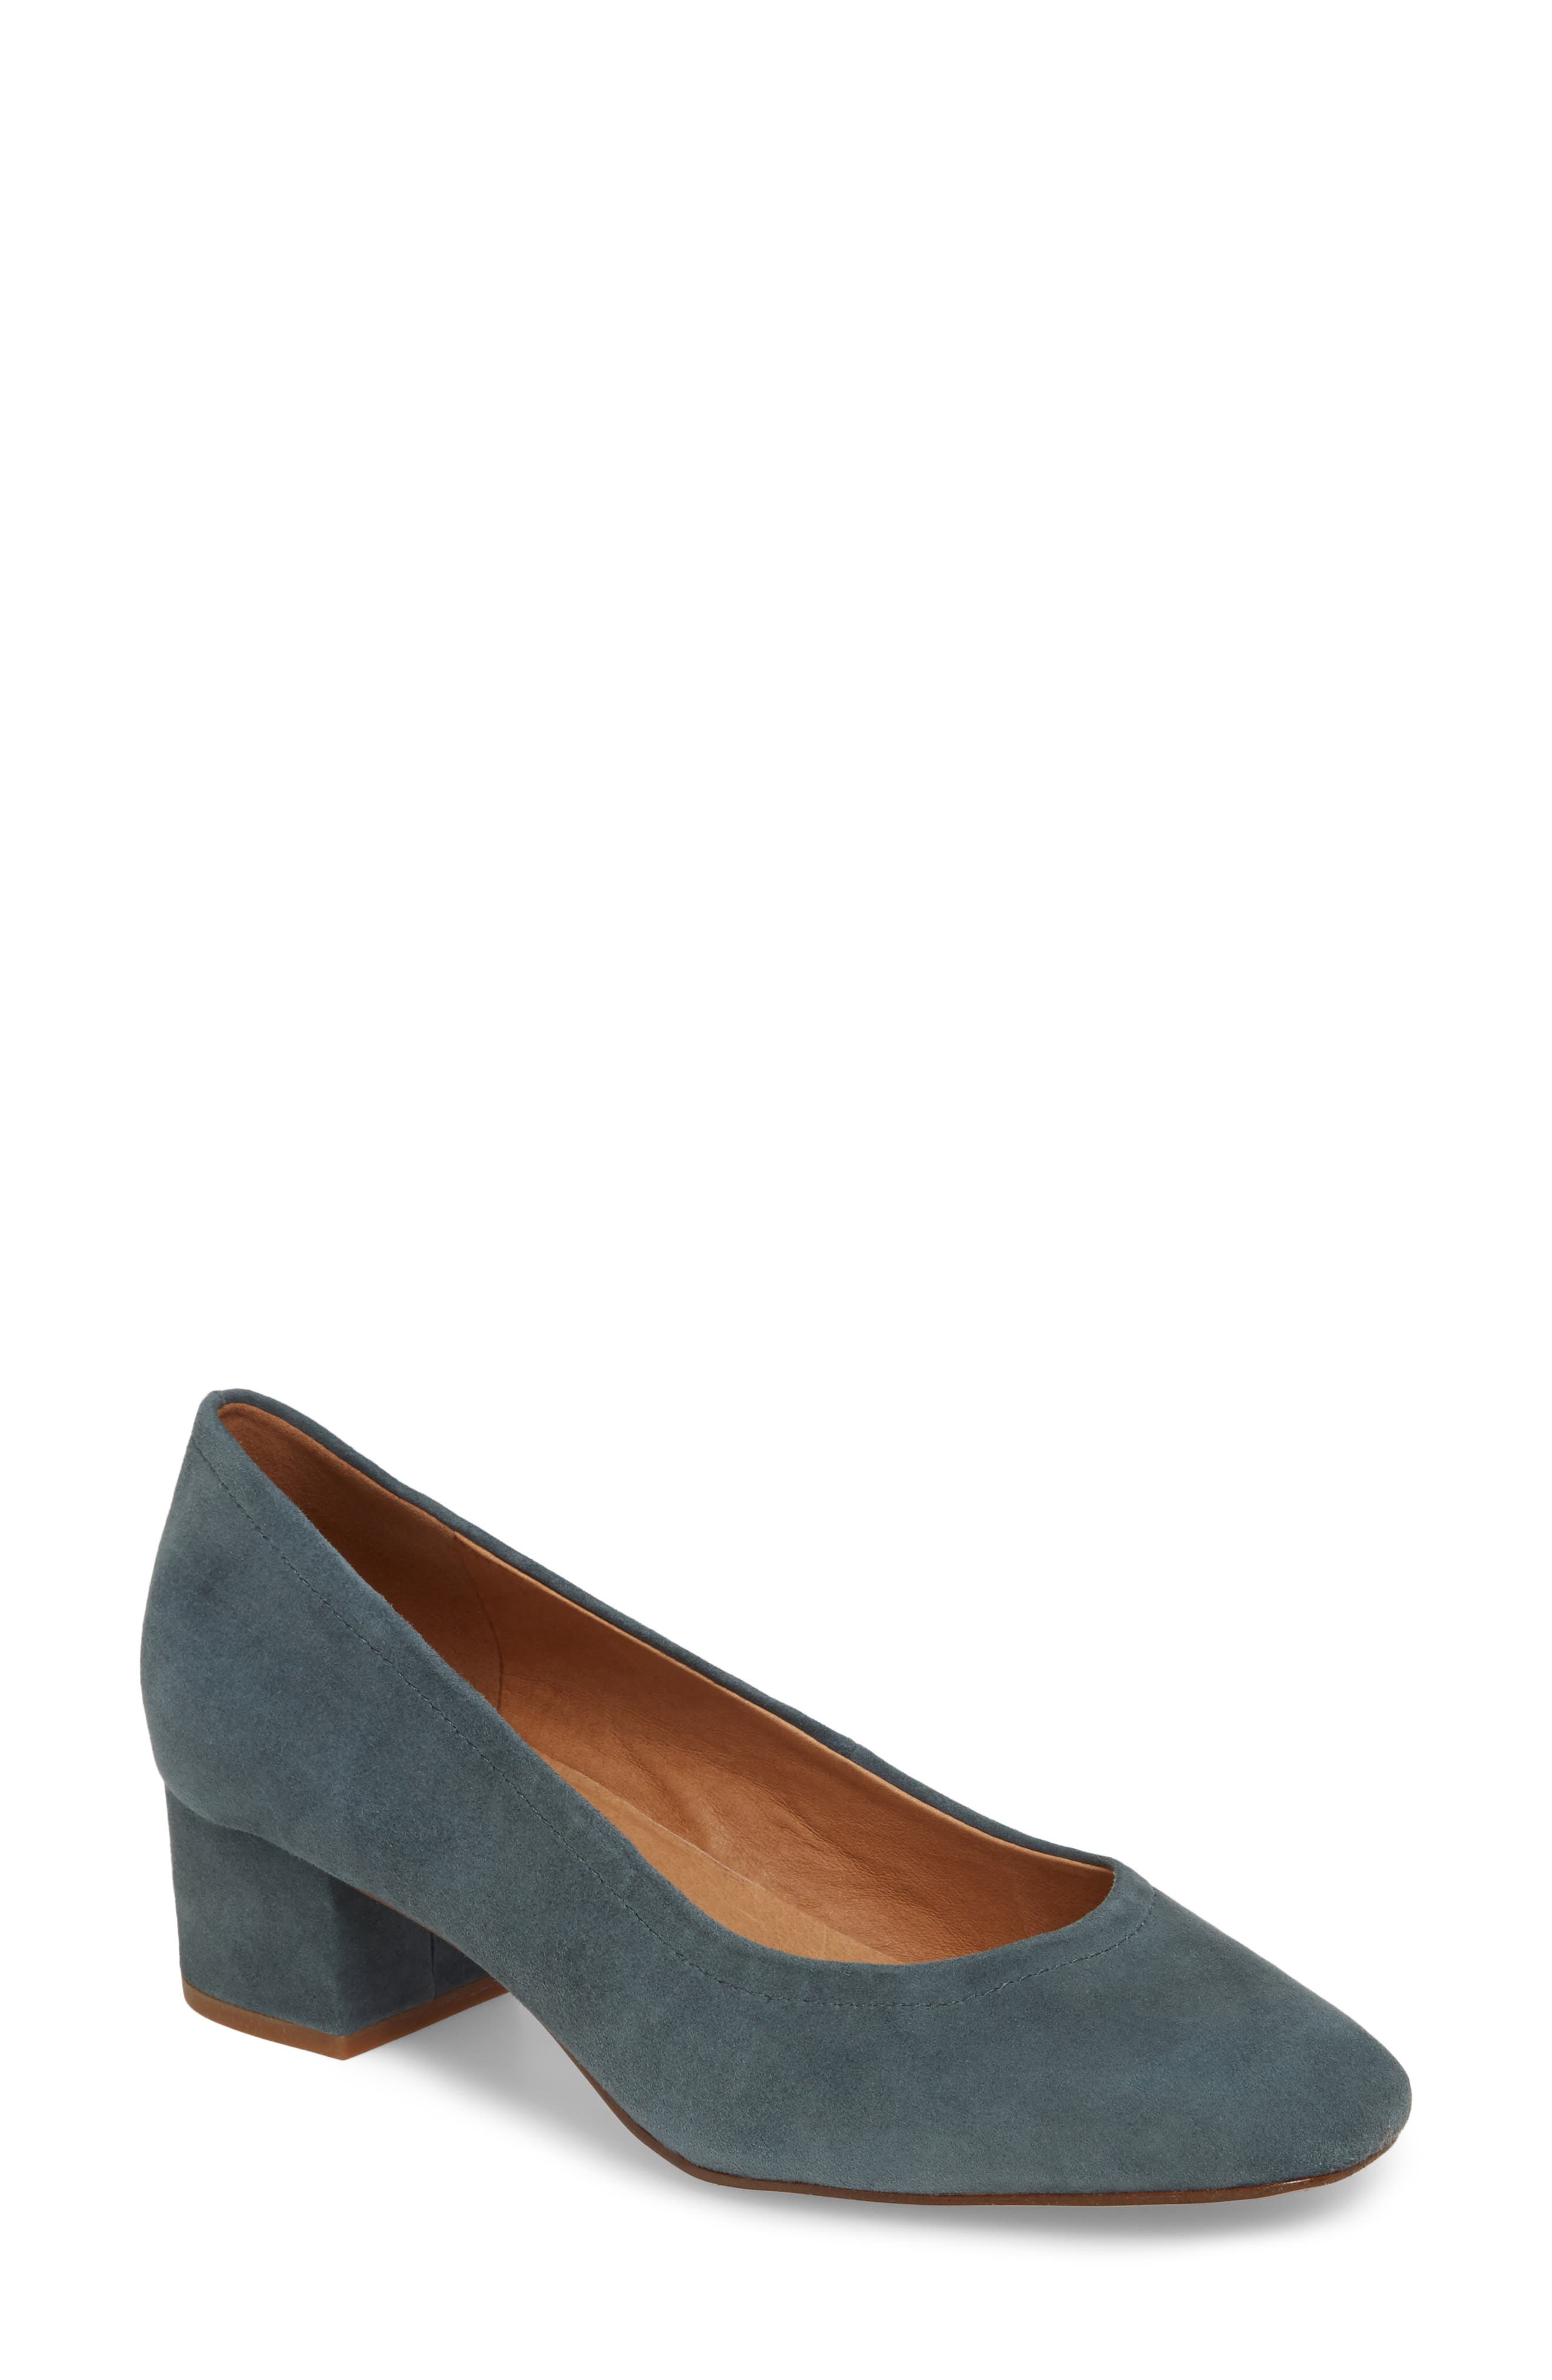 madewell block heels